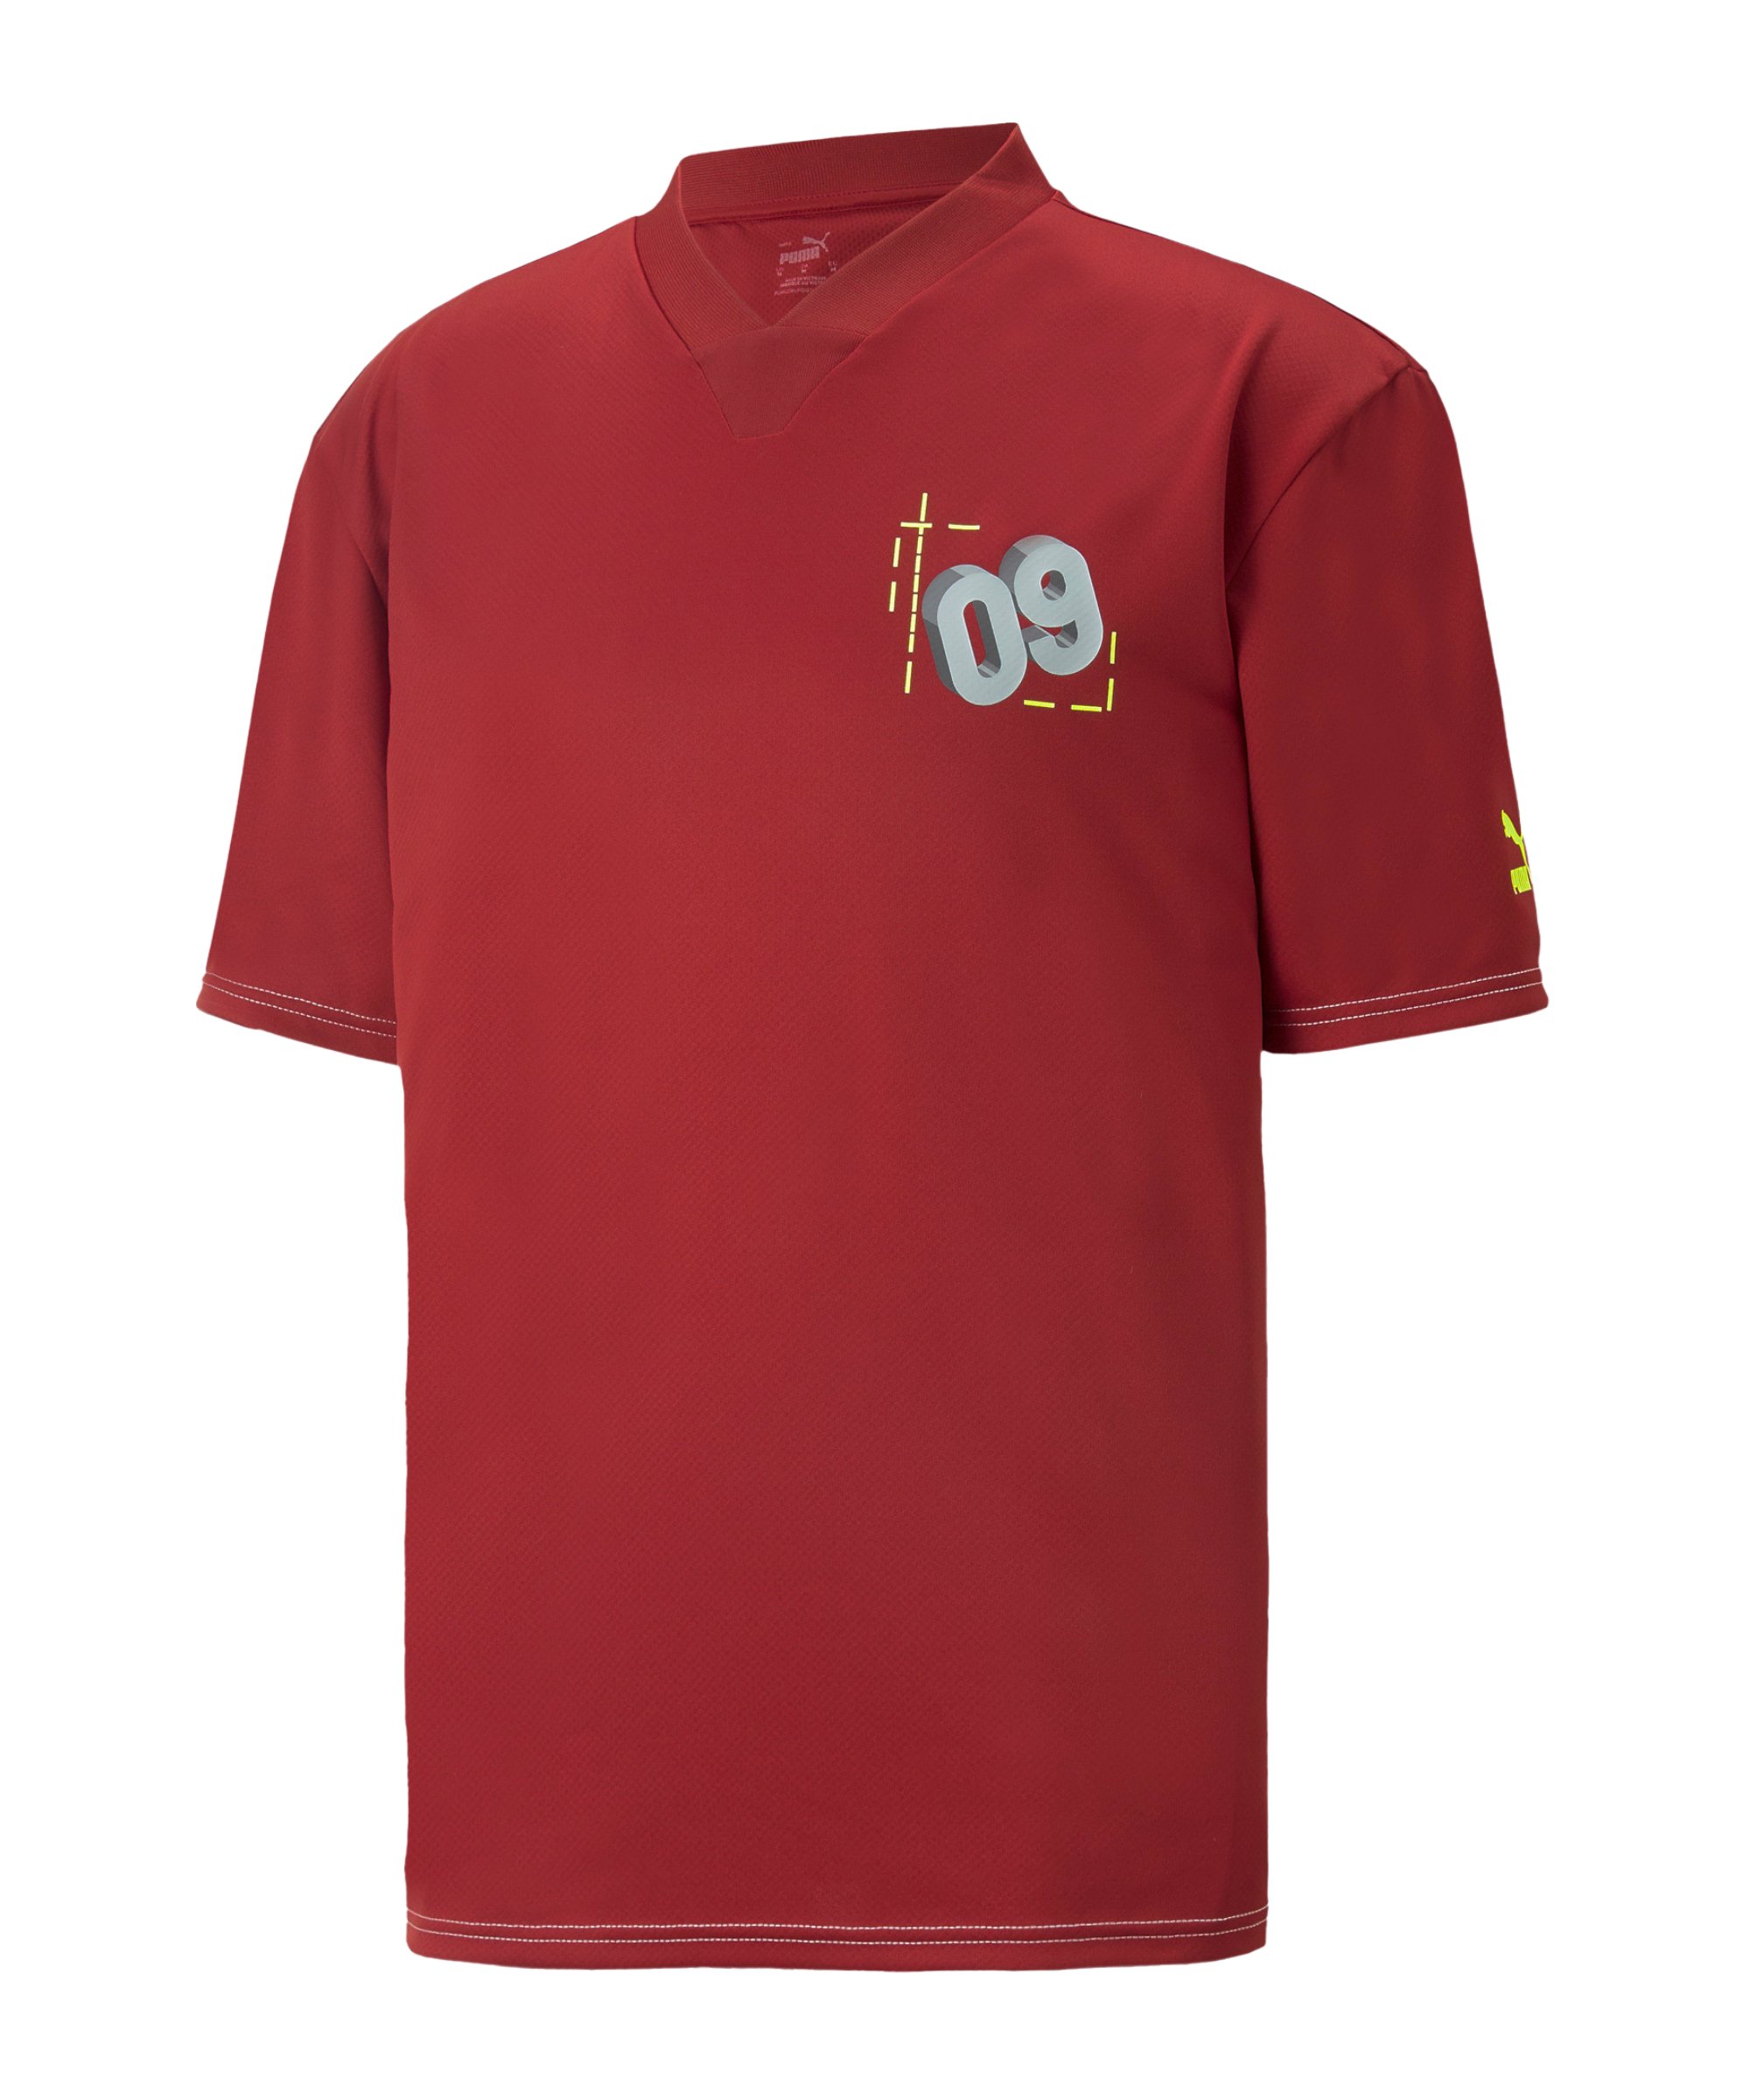 PUMA BVB Dortmund FtblStatement T-Shirt Rot F11 - rot